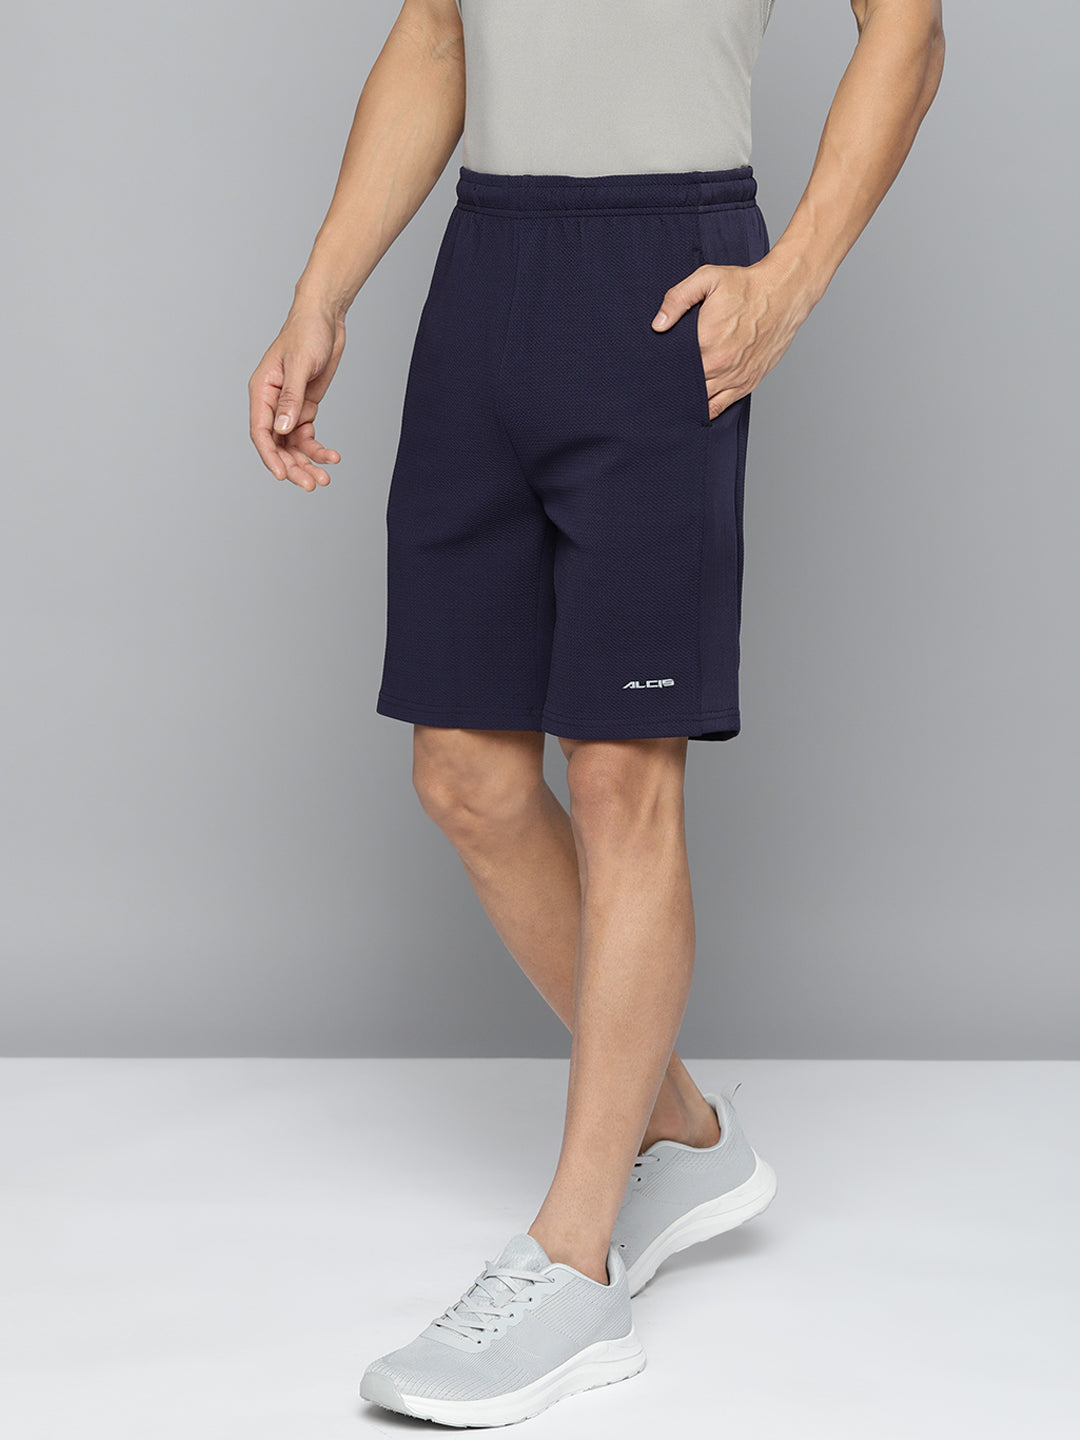 Alcis Men Navy Blue Solid Slim Fit Running Shorts